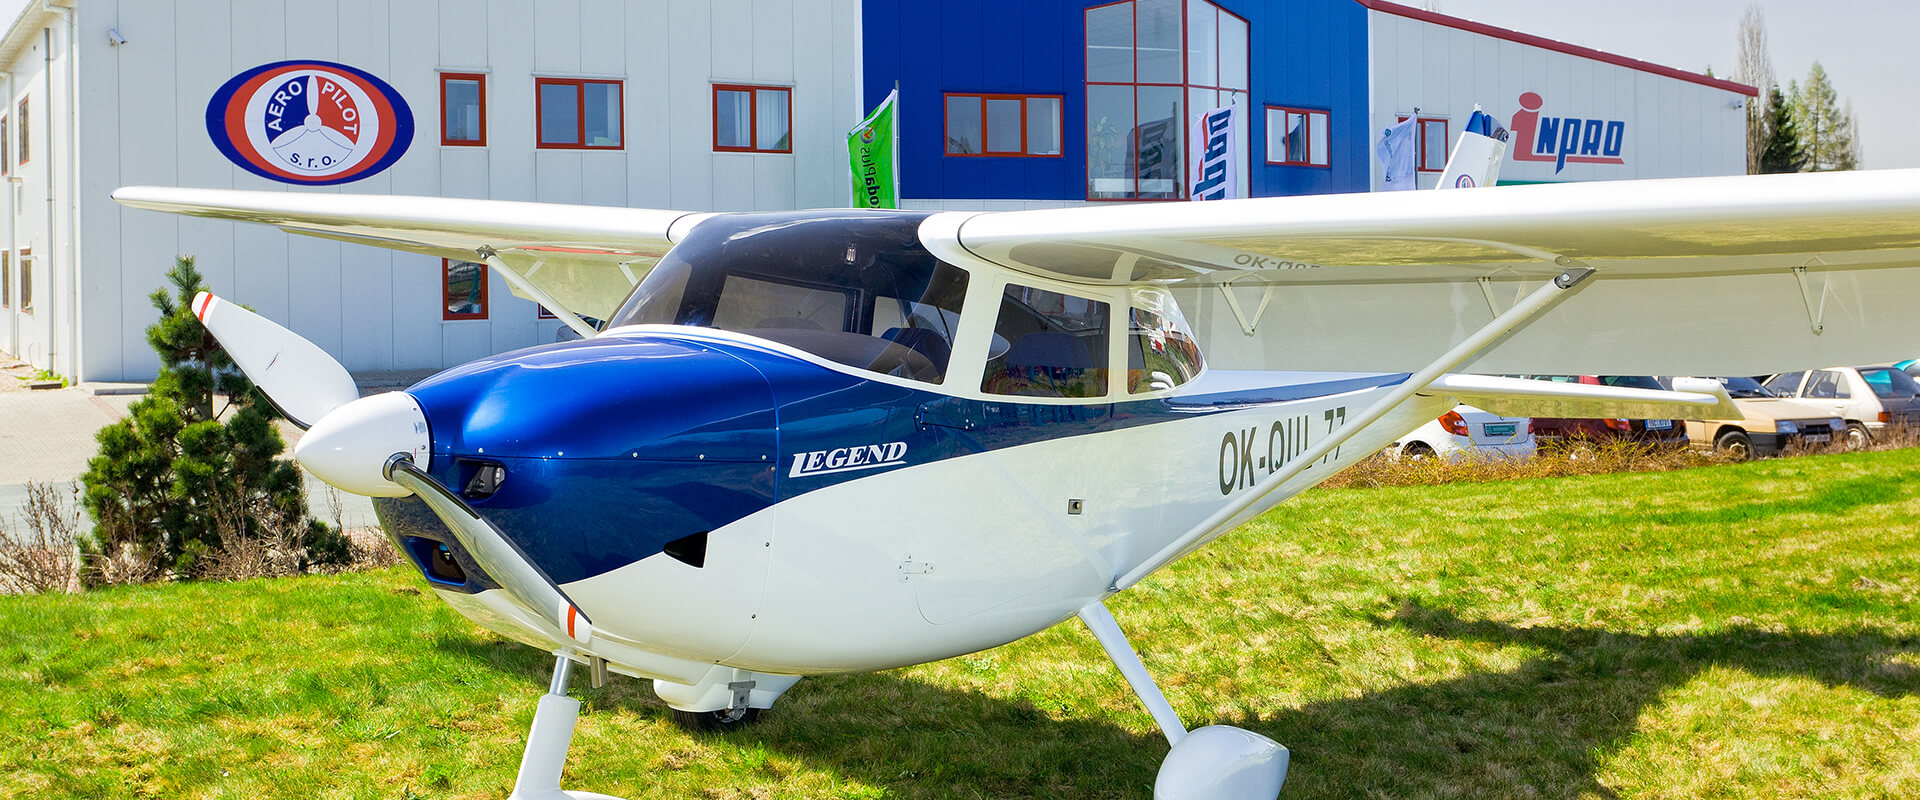 Aeropilot s.r.o. - výroba ultralehkých a lehkých sportních letadel